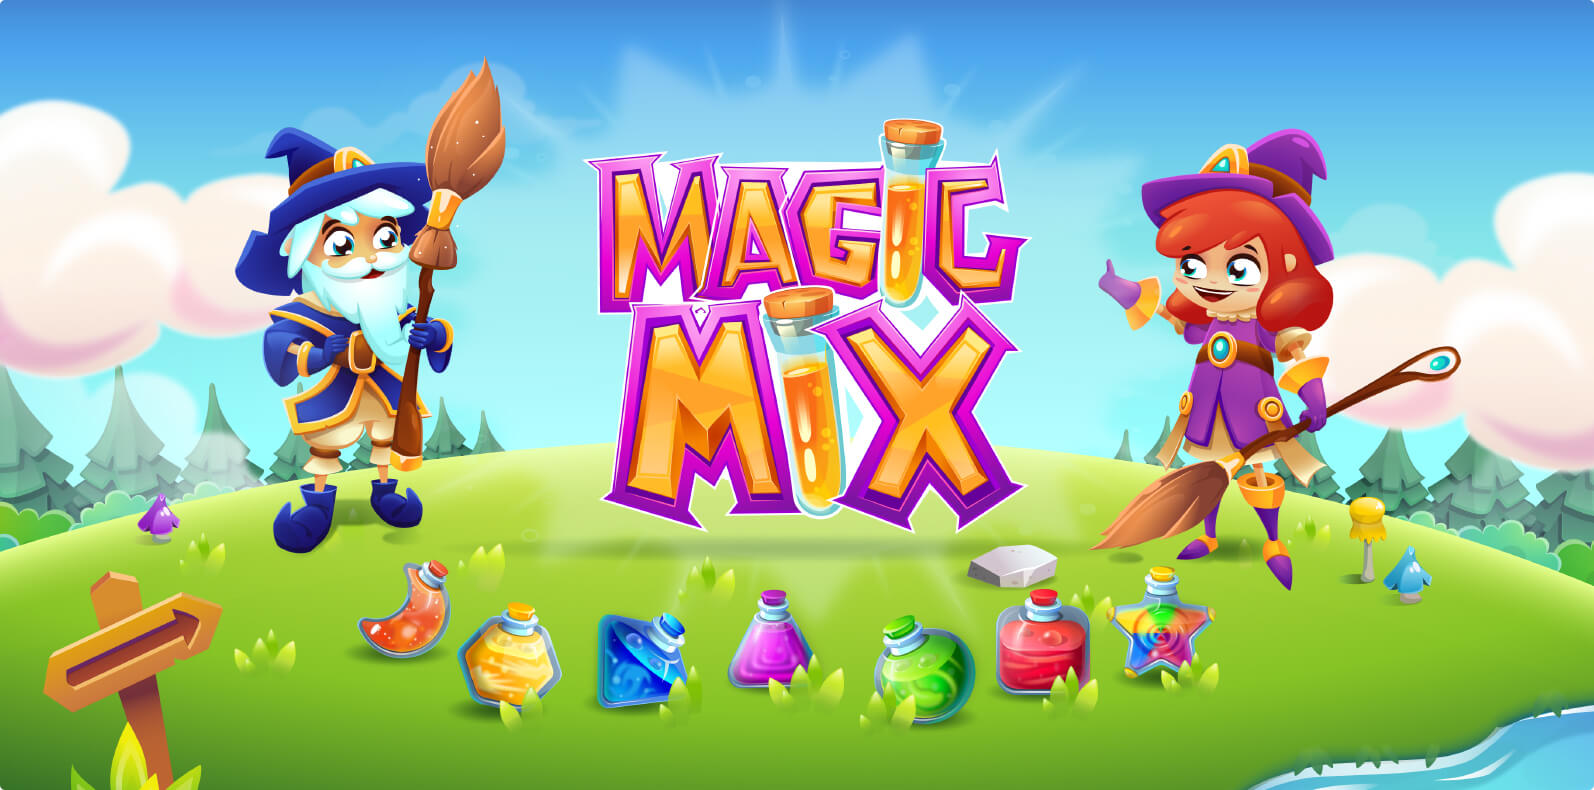 Magic Mix - Match 3 casual game design